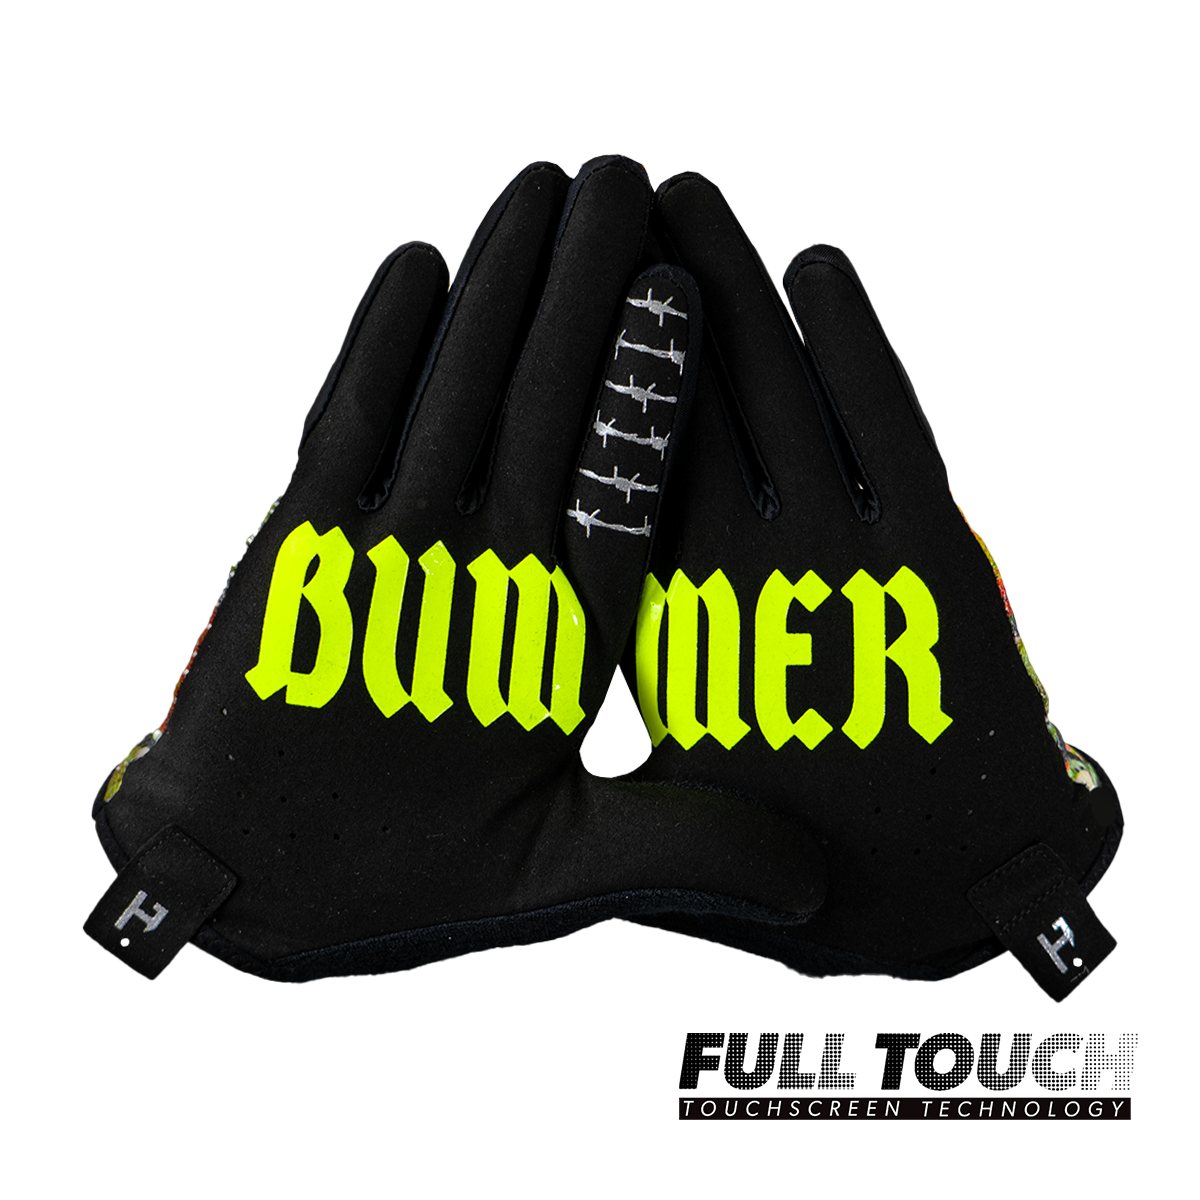 Gloves - Bummerland Barbed Floral